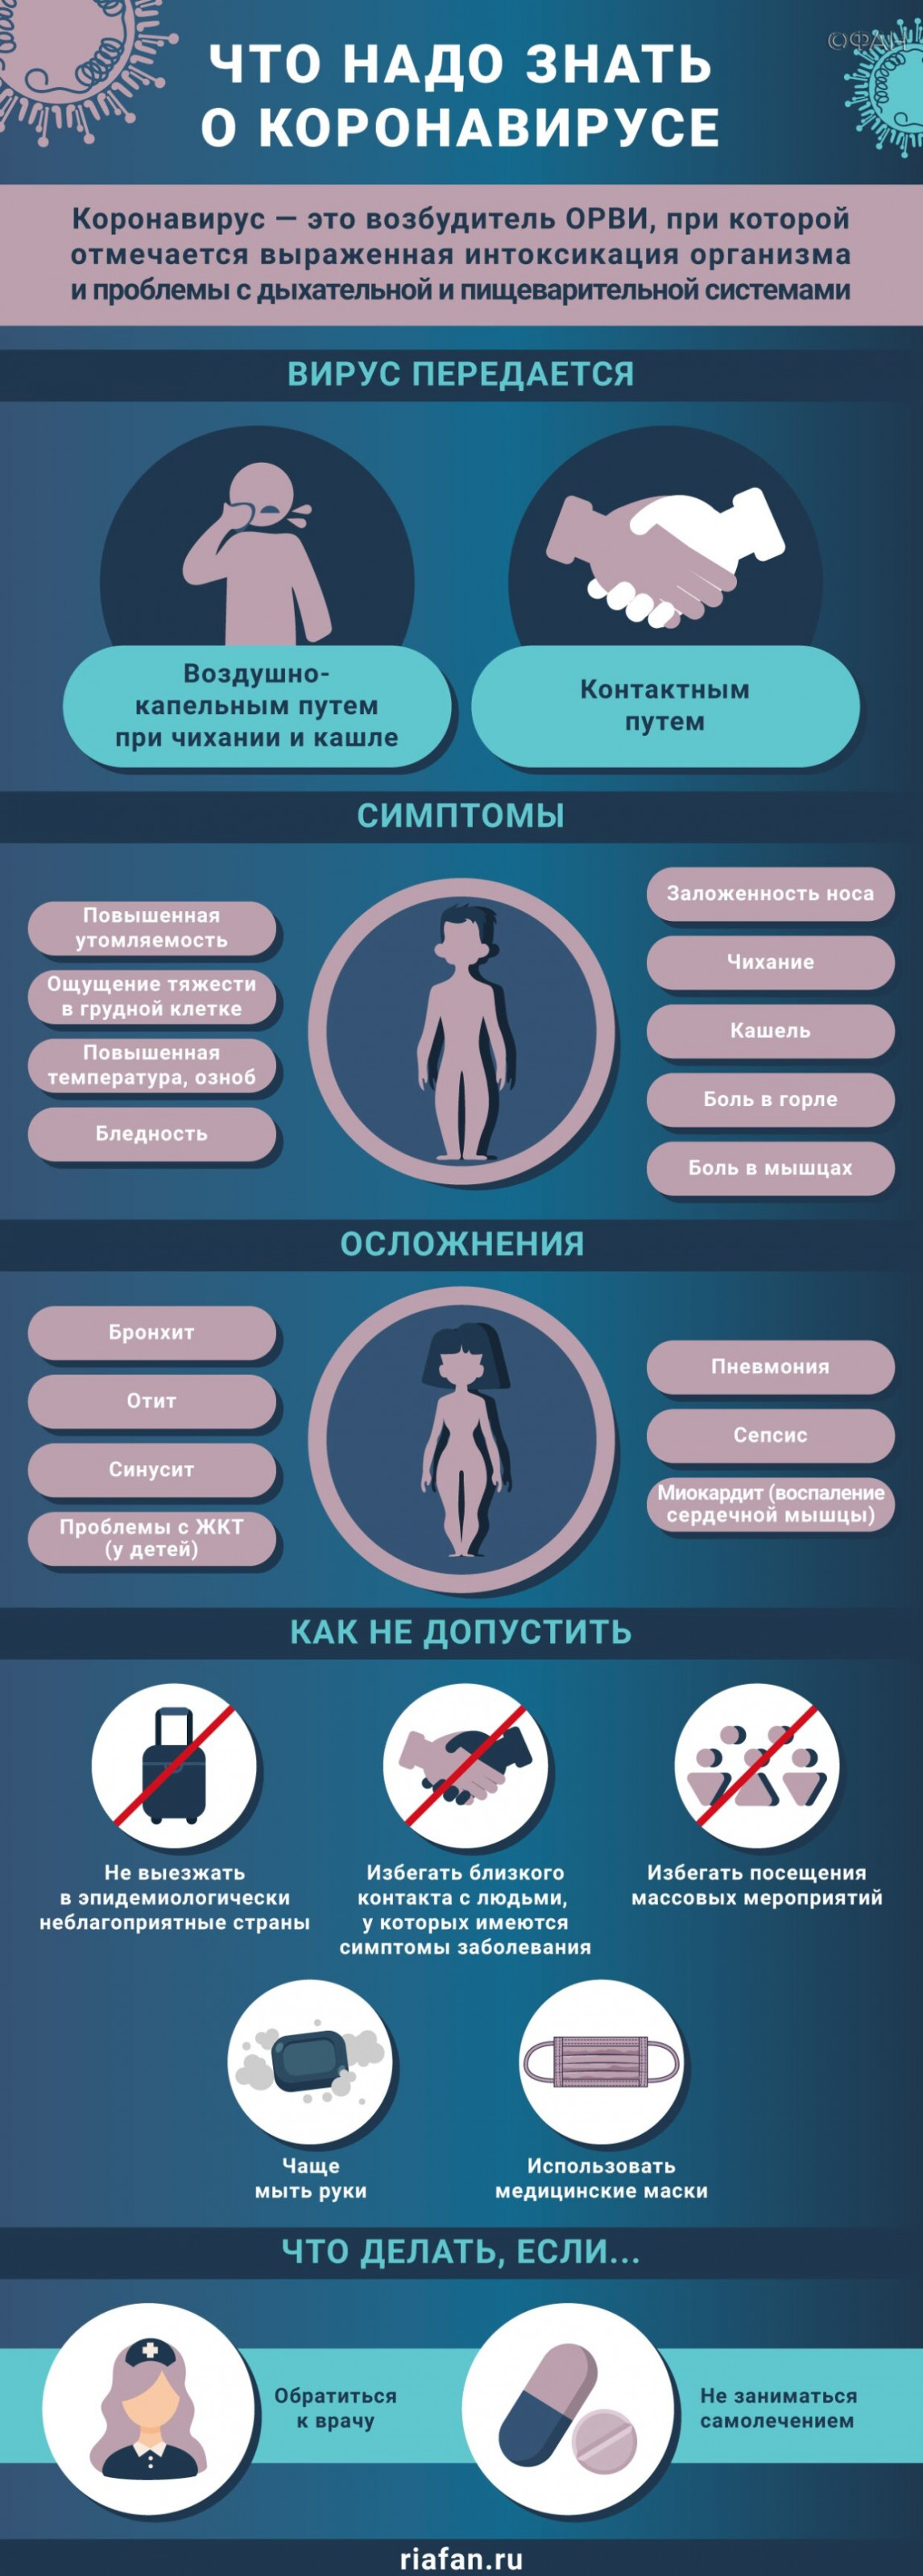 Коронавирус выявили почти у 90 пациентов и сотрудников глазного центра в Красноярске